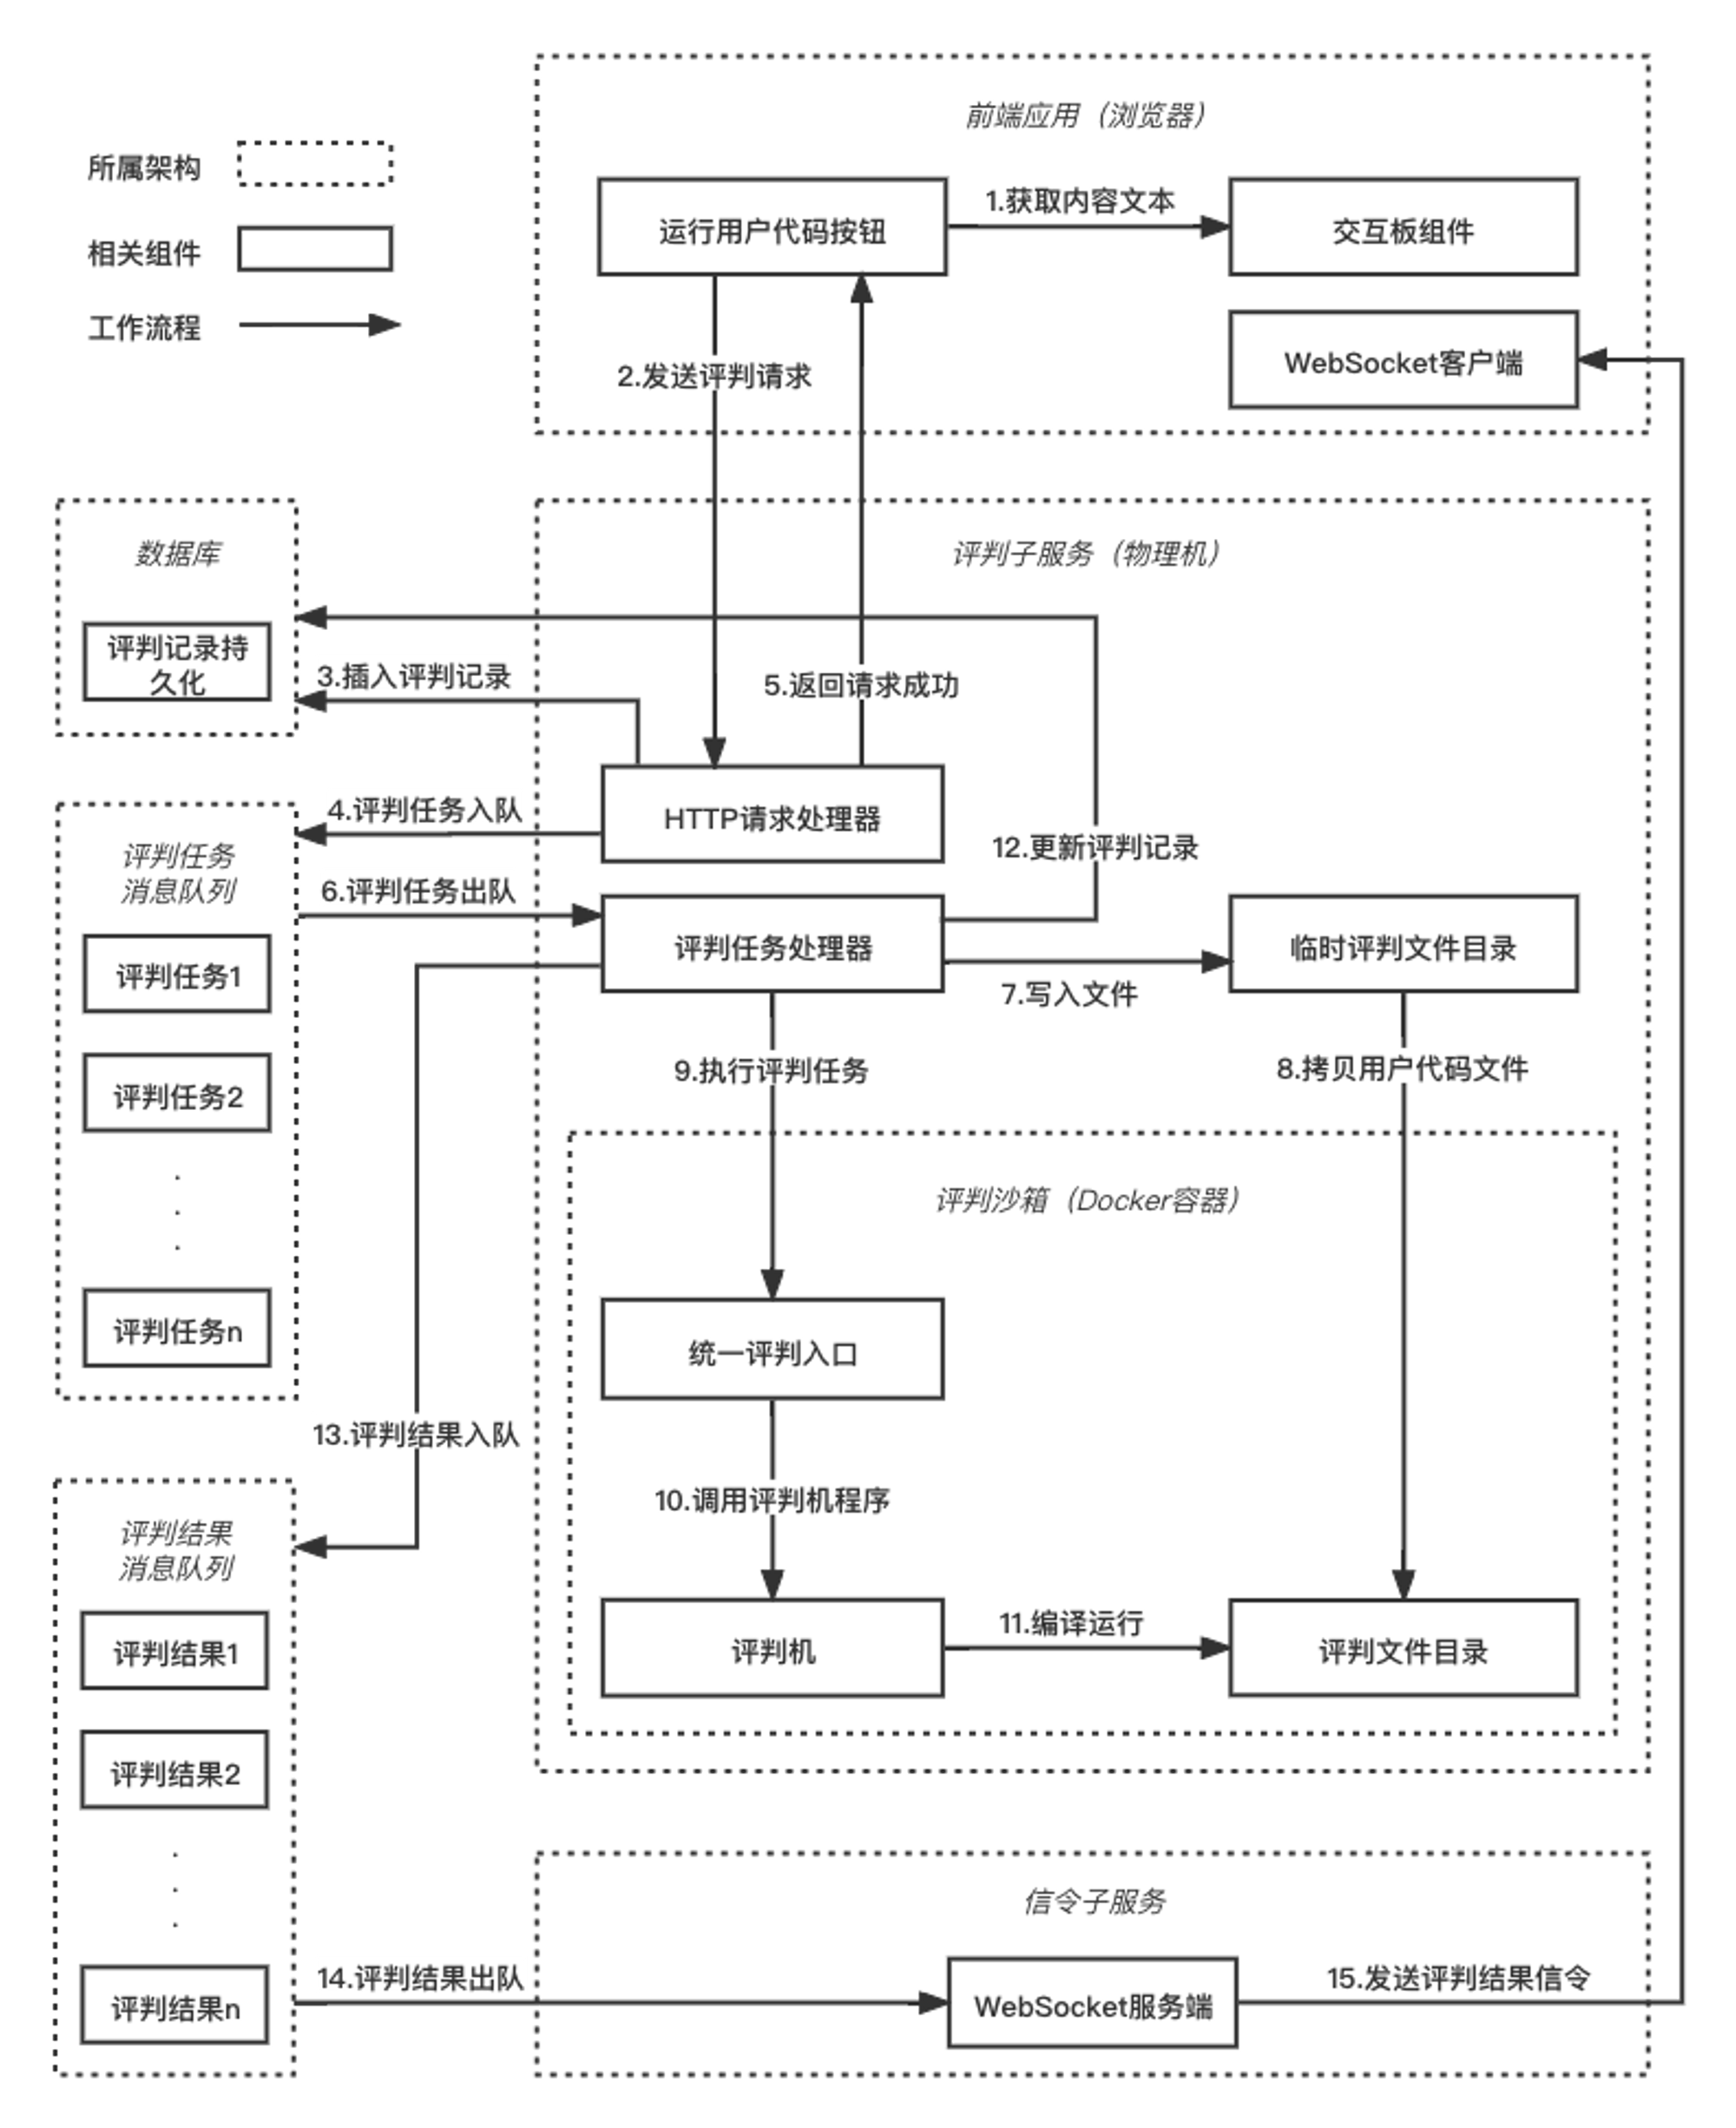 图5-8 在线编程功能的业务流程示意图